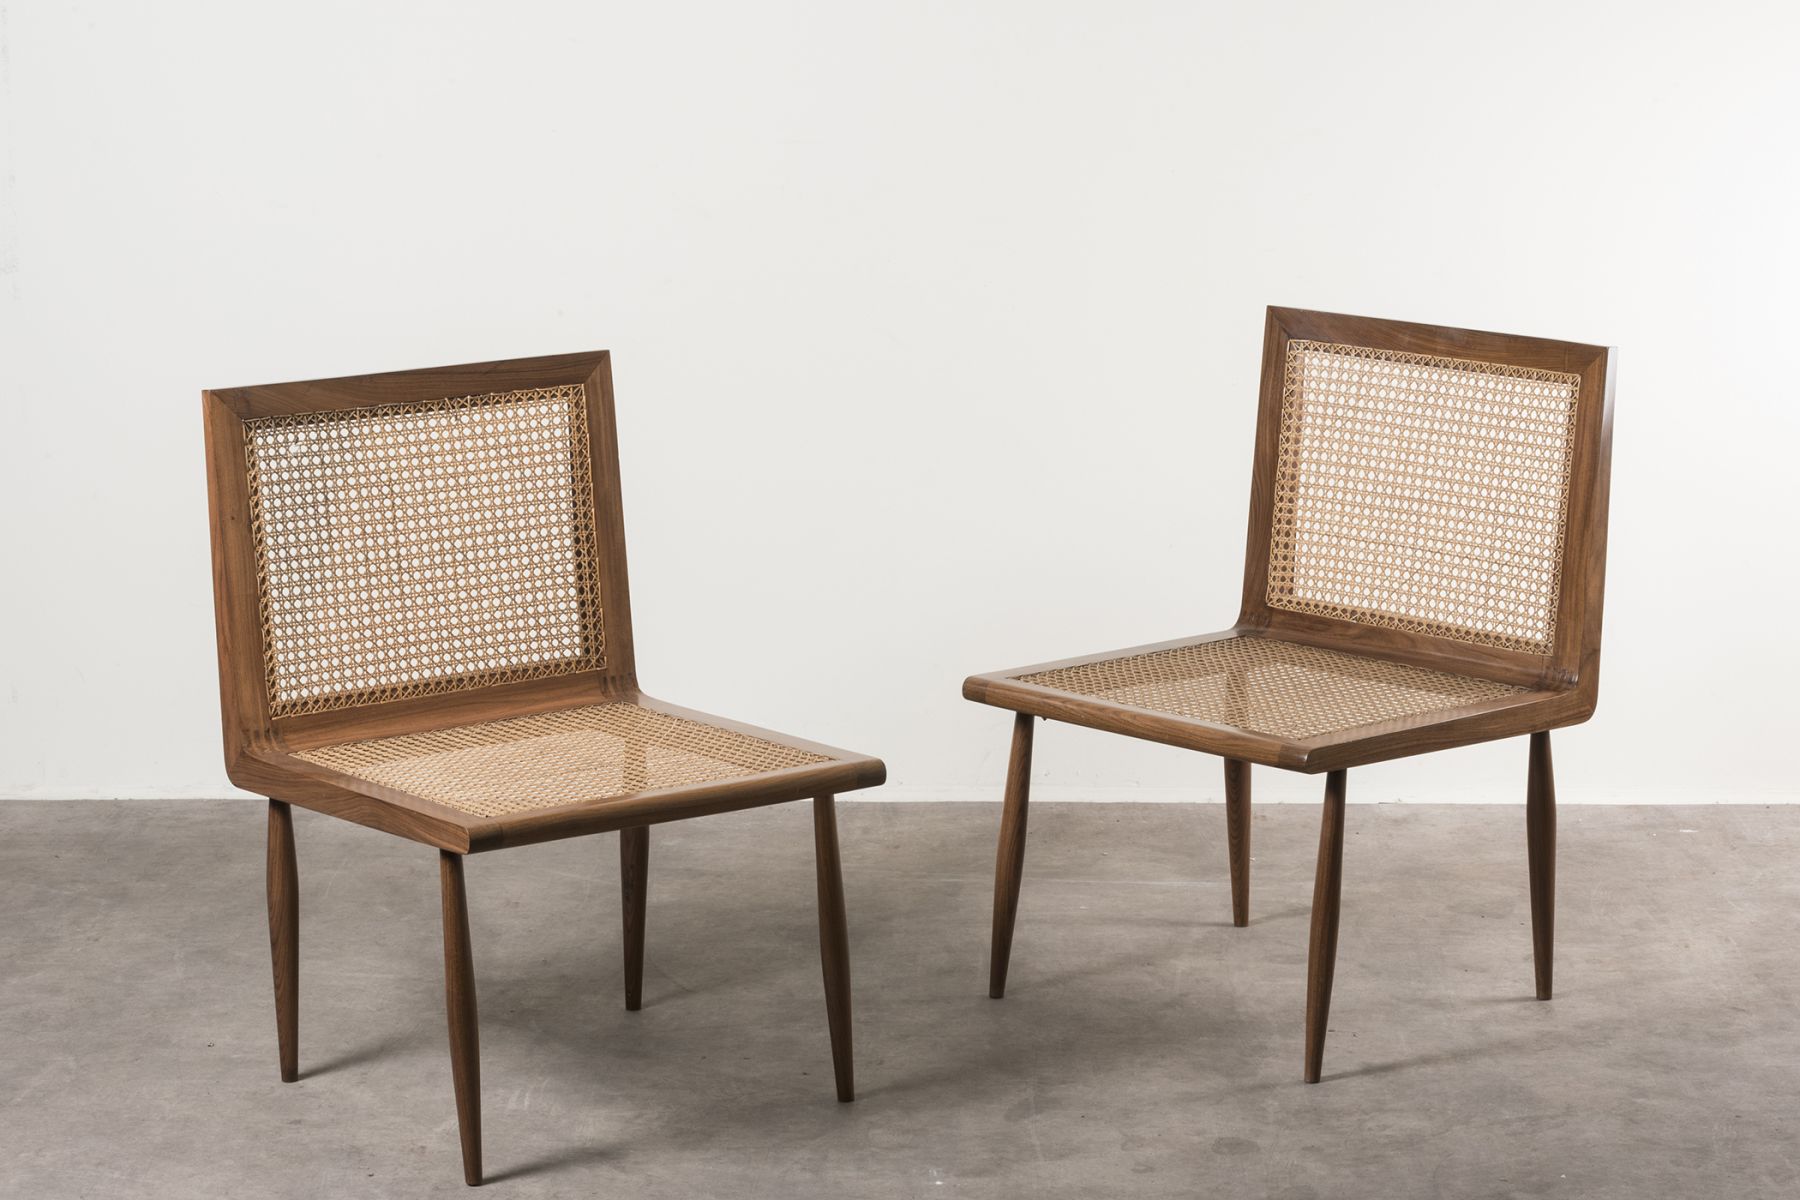  Two chairs model 'Cadeira baixa para quarto' Joaquim Tenreiro pic-1